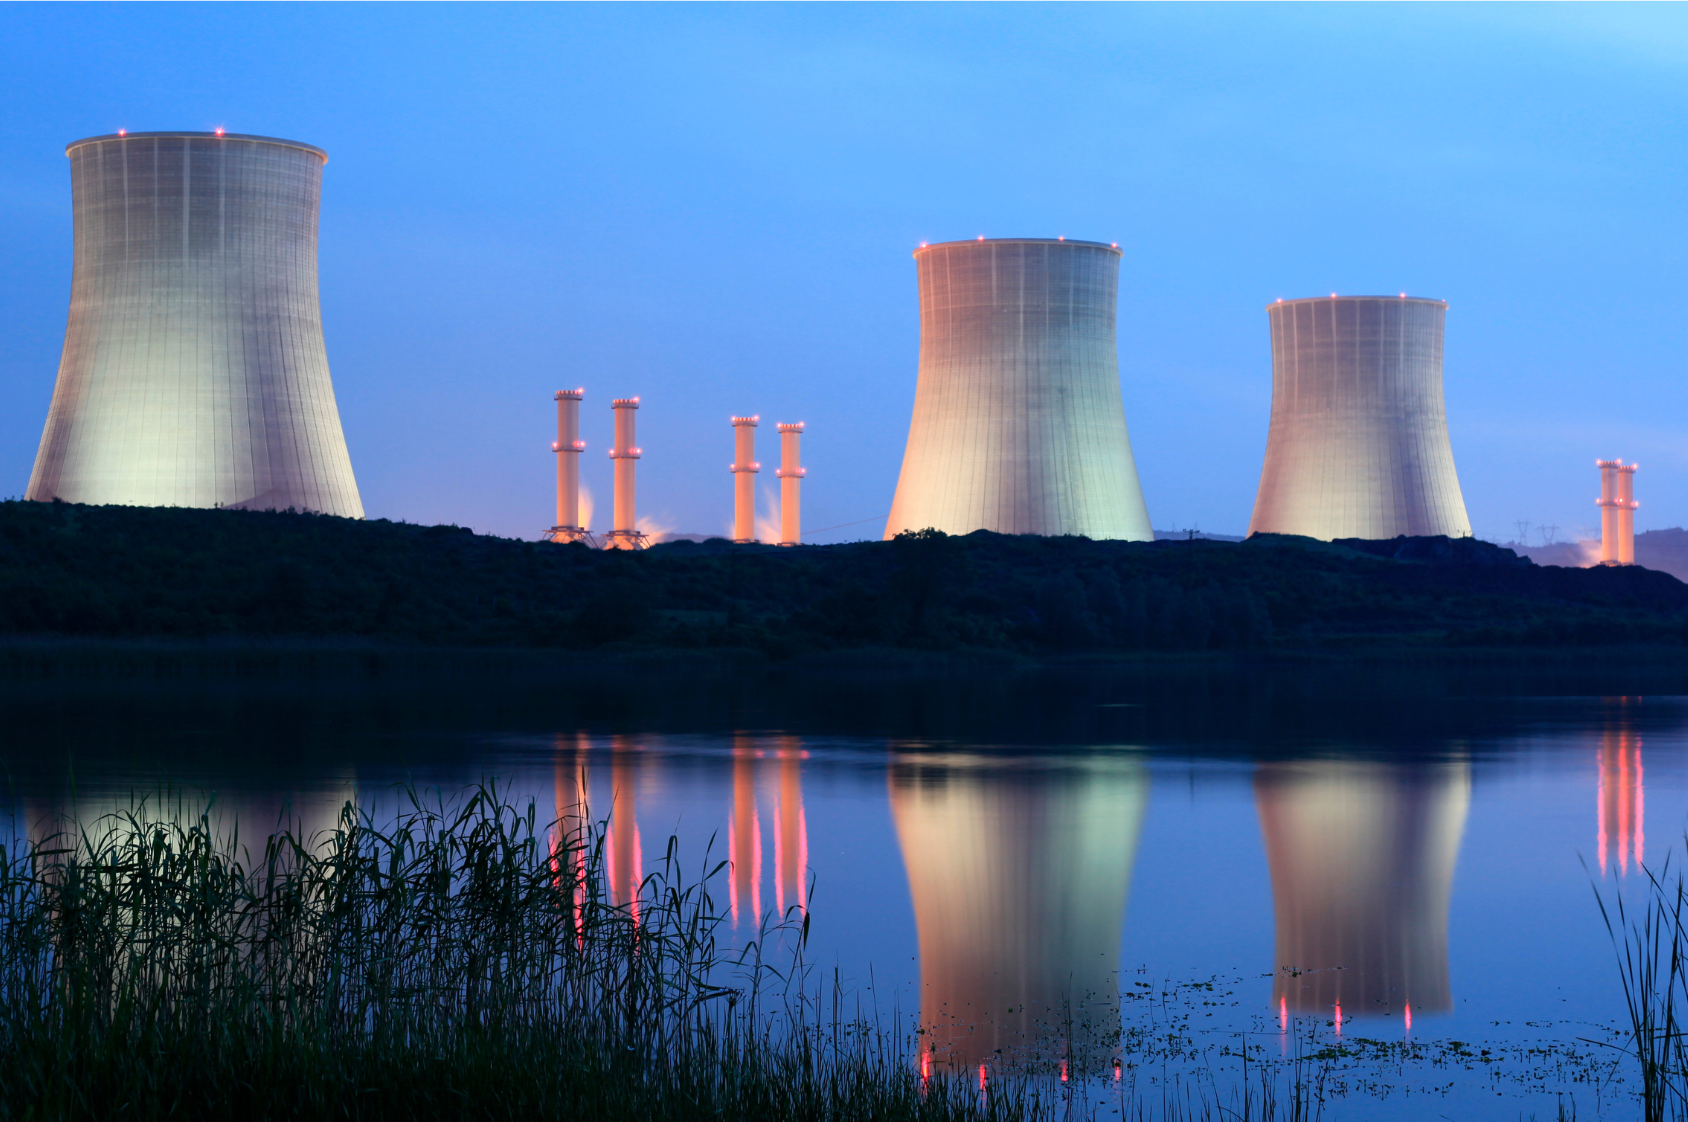 Elektrownia atomowa, widok nocą. Trzy duże kominy i mniejsze. Wszystkie podświetlone. Kominy odbijają się w lustrze wody na pierwszym planie